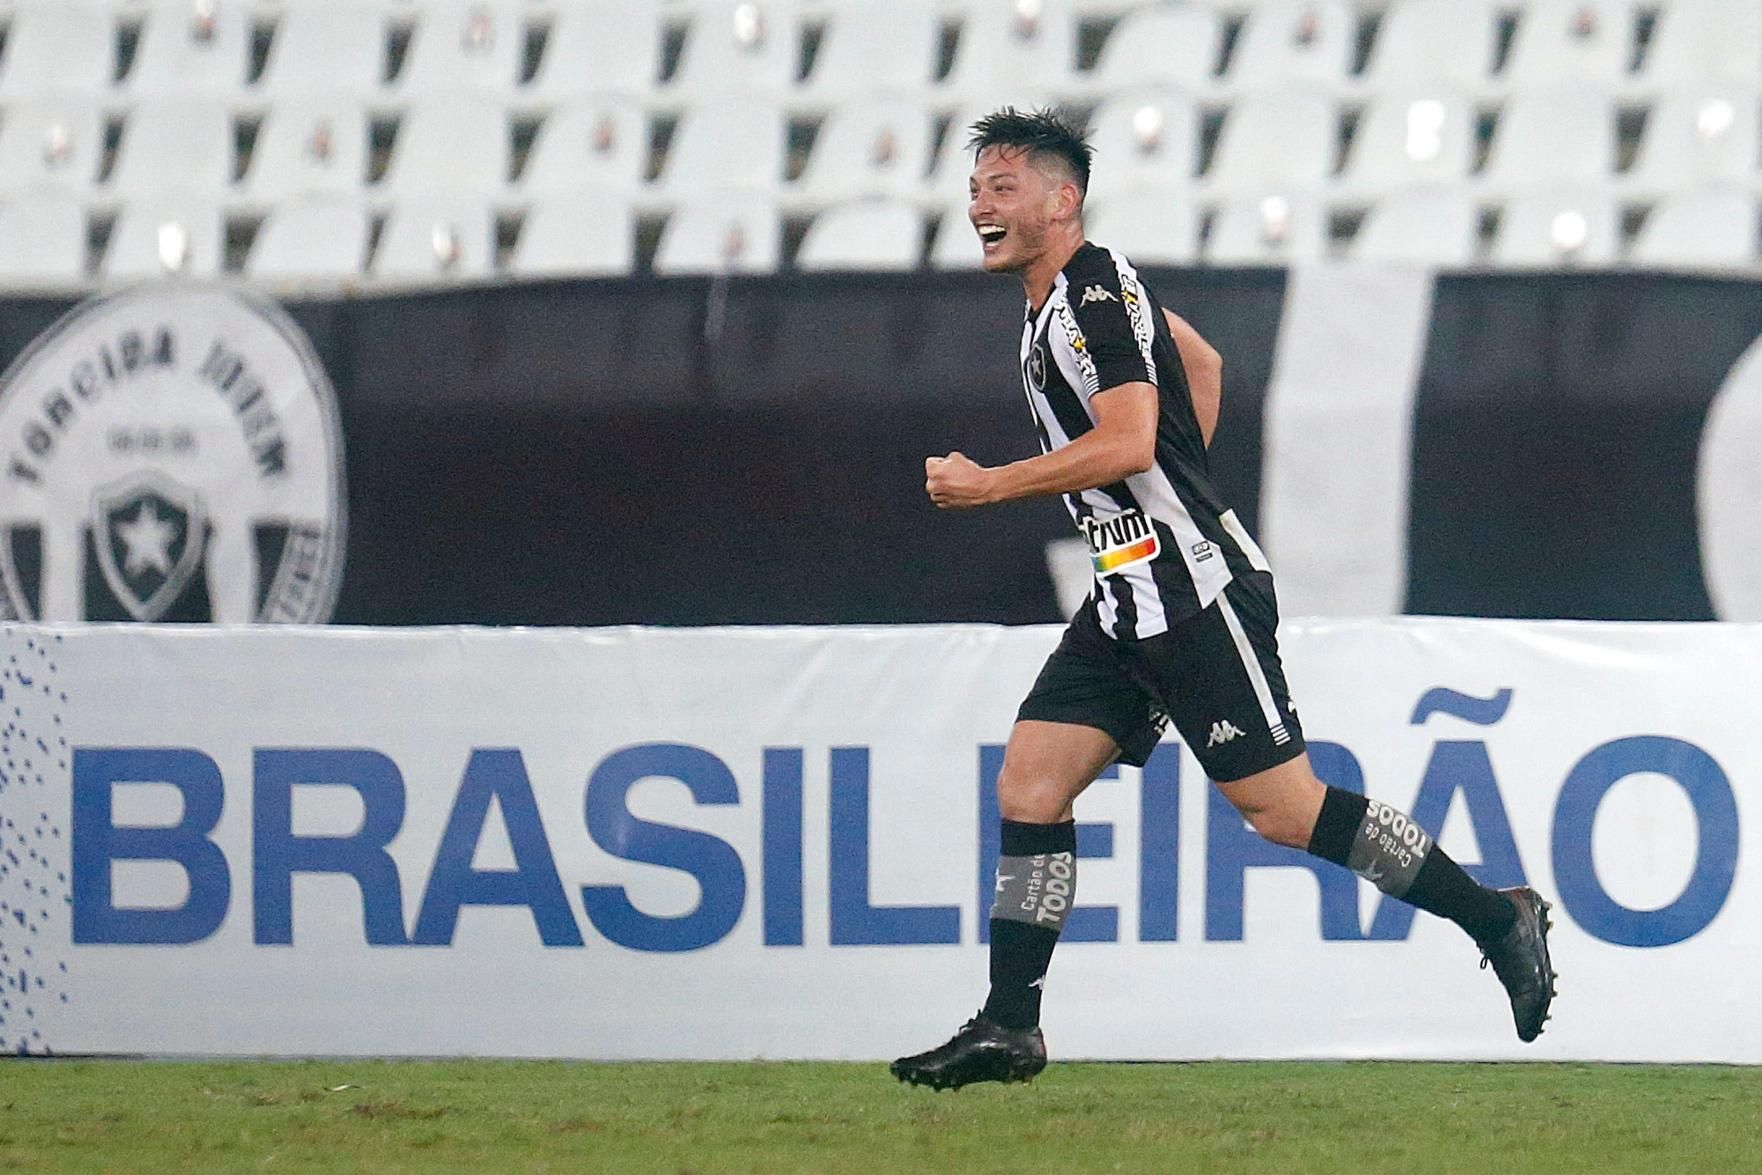 Com arbitragem confusa, Botafogo perde para o Vila Nova - Botafogo